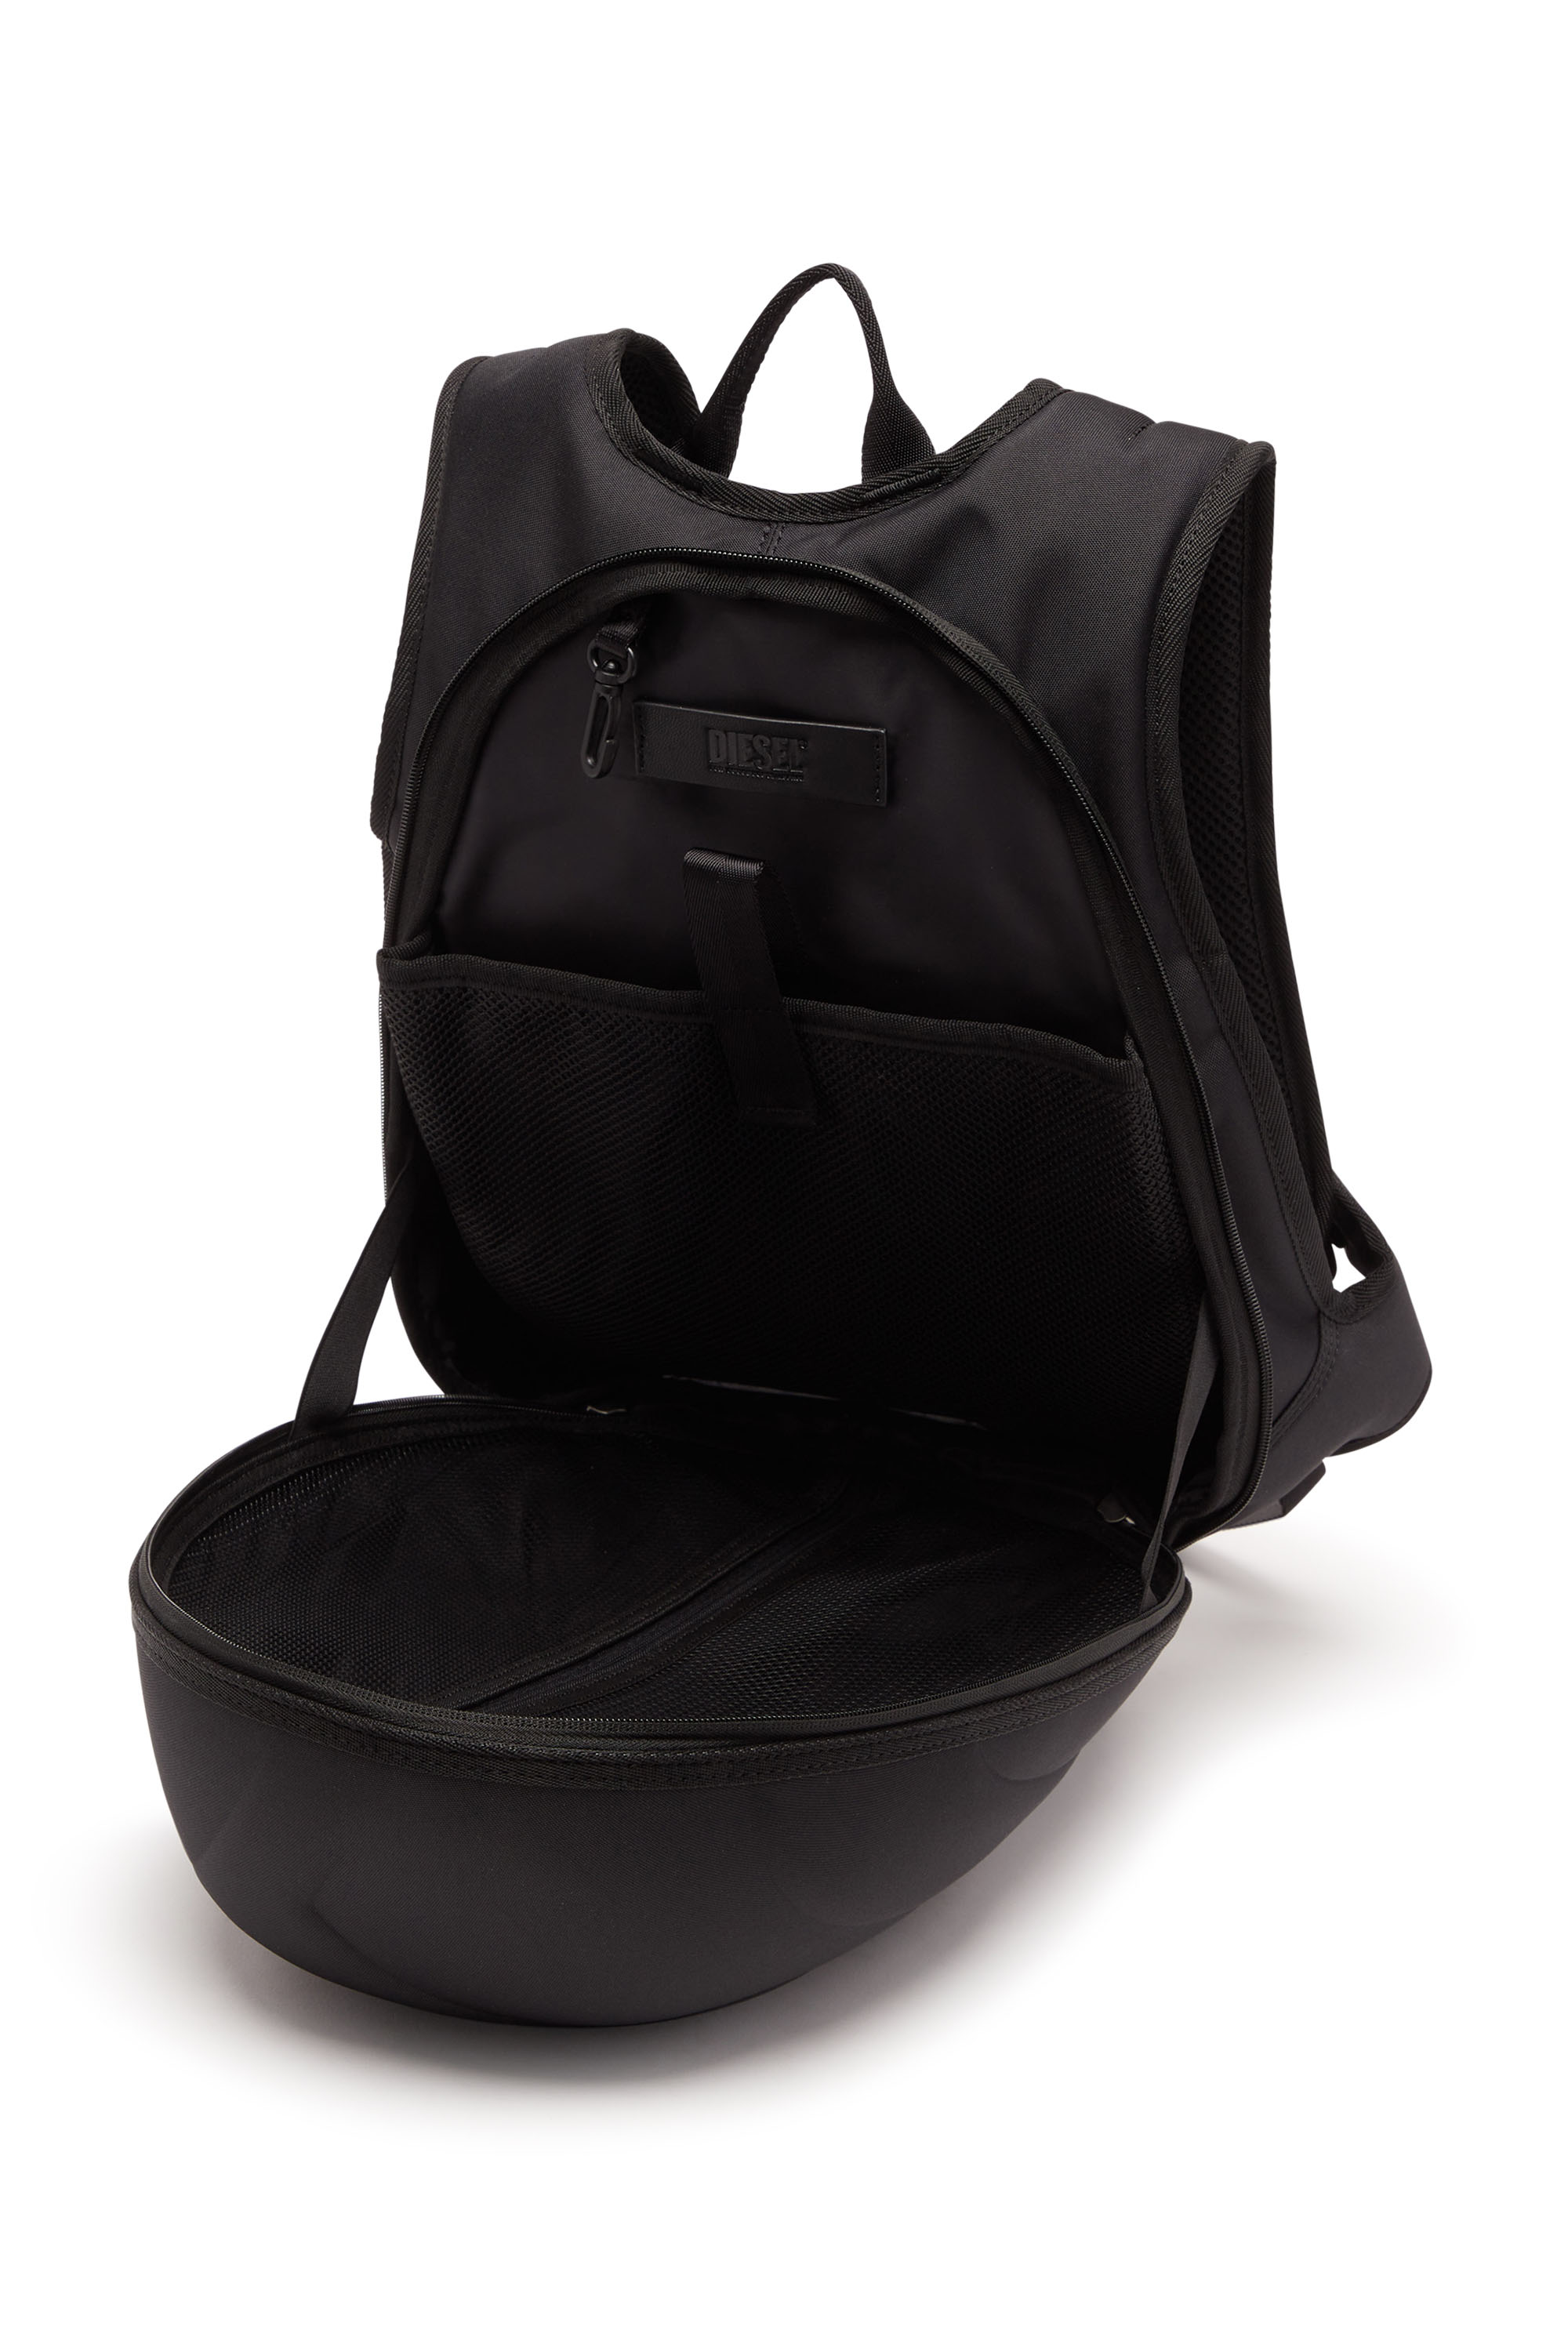 Diesel - 1DR-POD BACKPACK, Man 1DR-Pod Backpack - Hard shell backpack in Black - Image 4